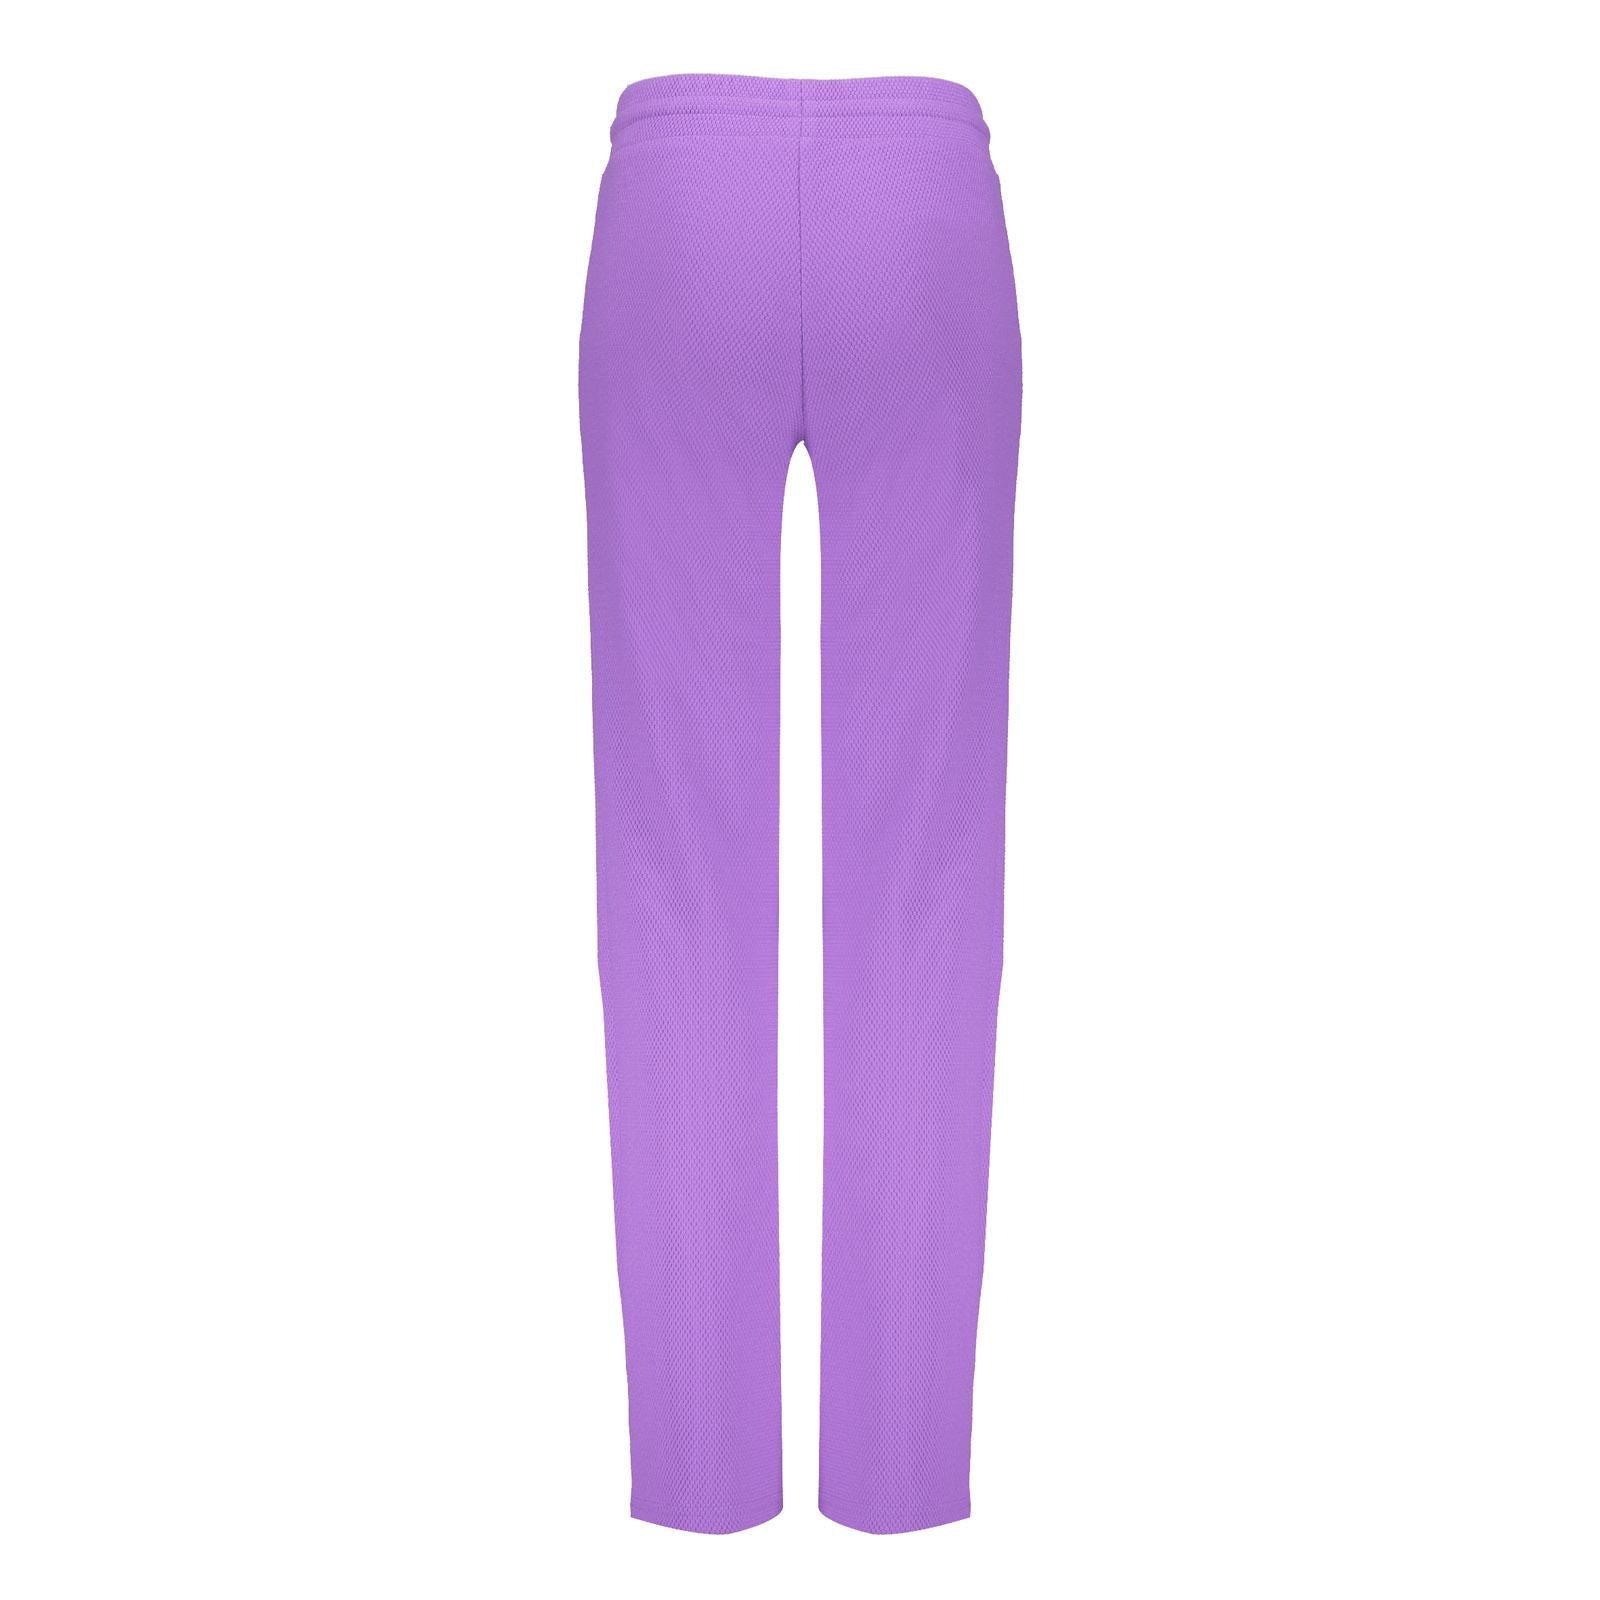 Meisjes Pants wide comfy  van Geisha in de kleur purple in maat 176.